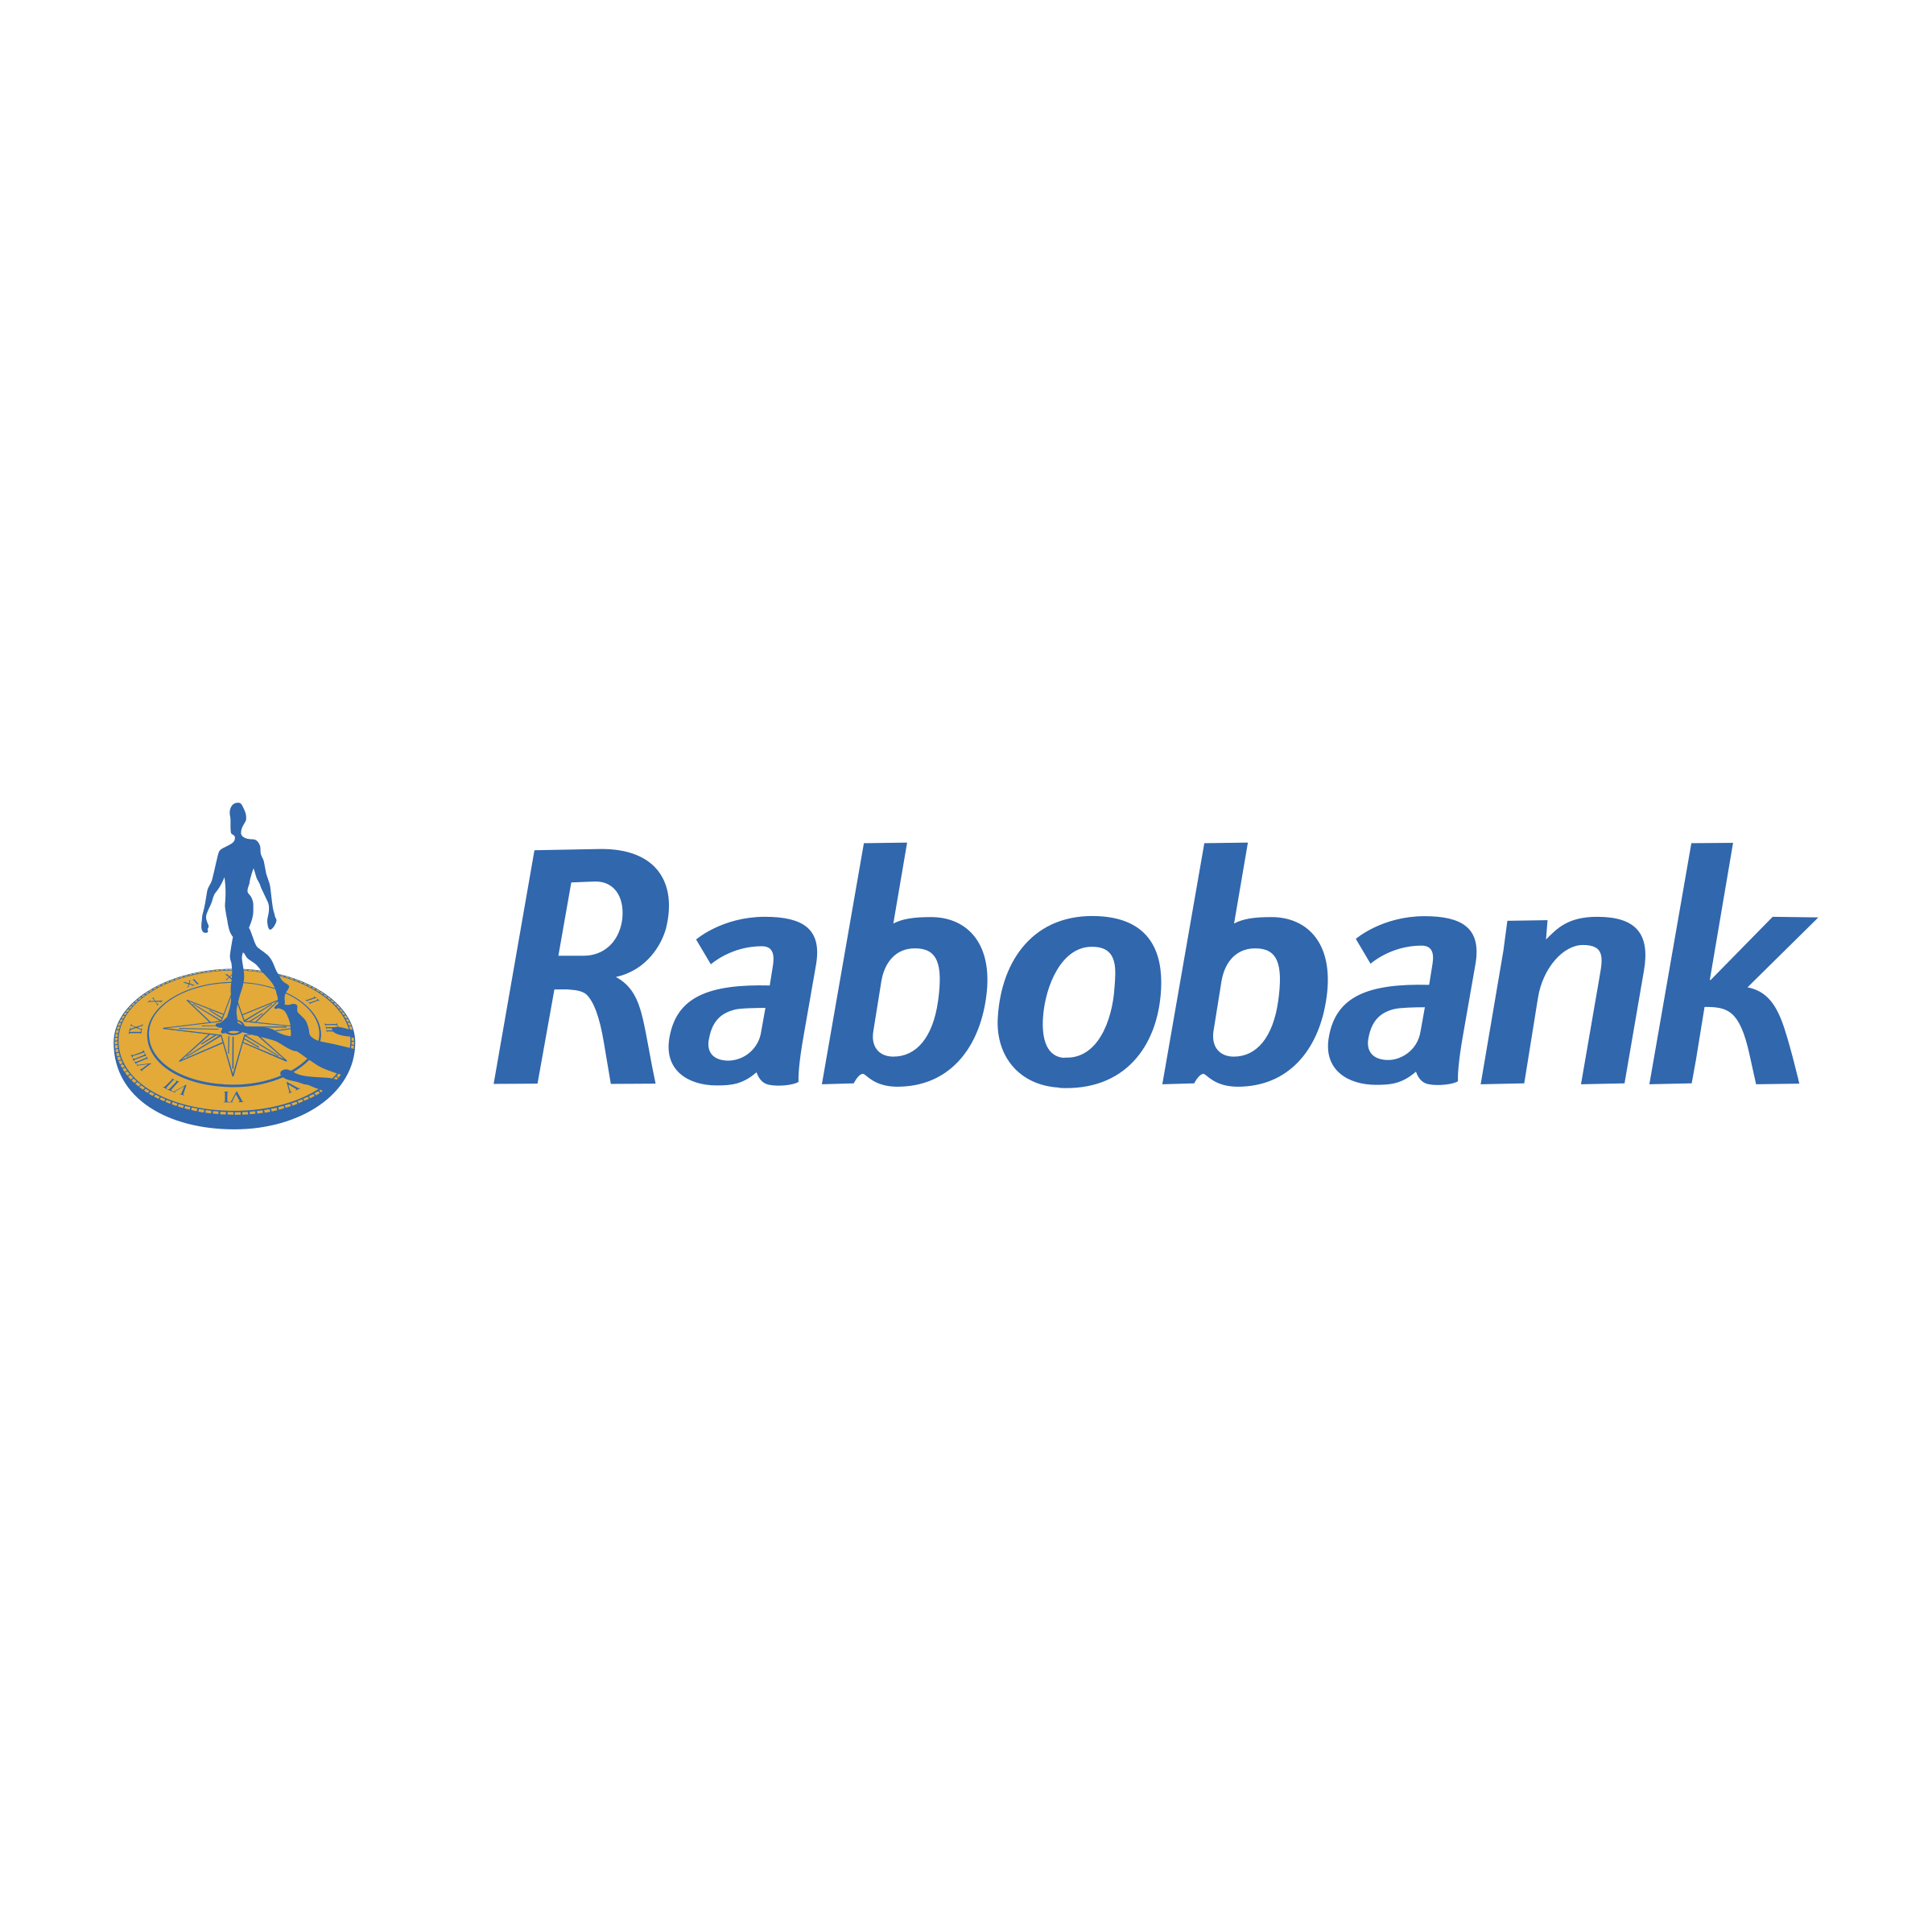 Rabobank Logo - Rabobank Logo PNG Transparent & SVG Vector - Freebie Supply